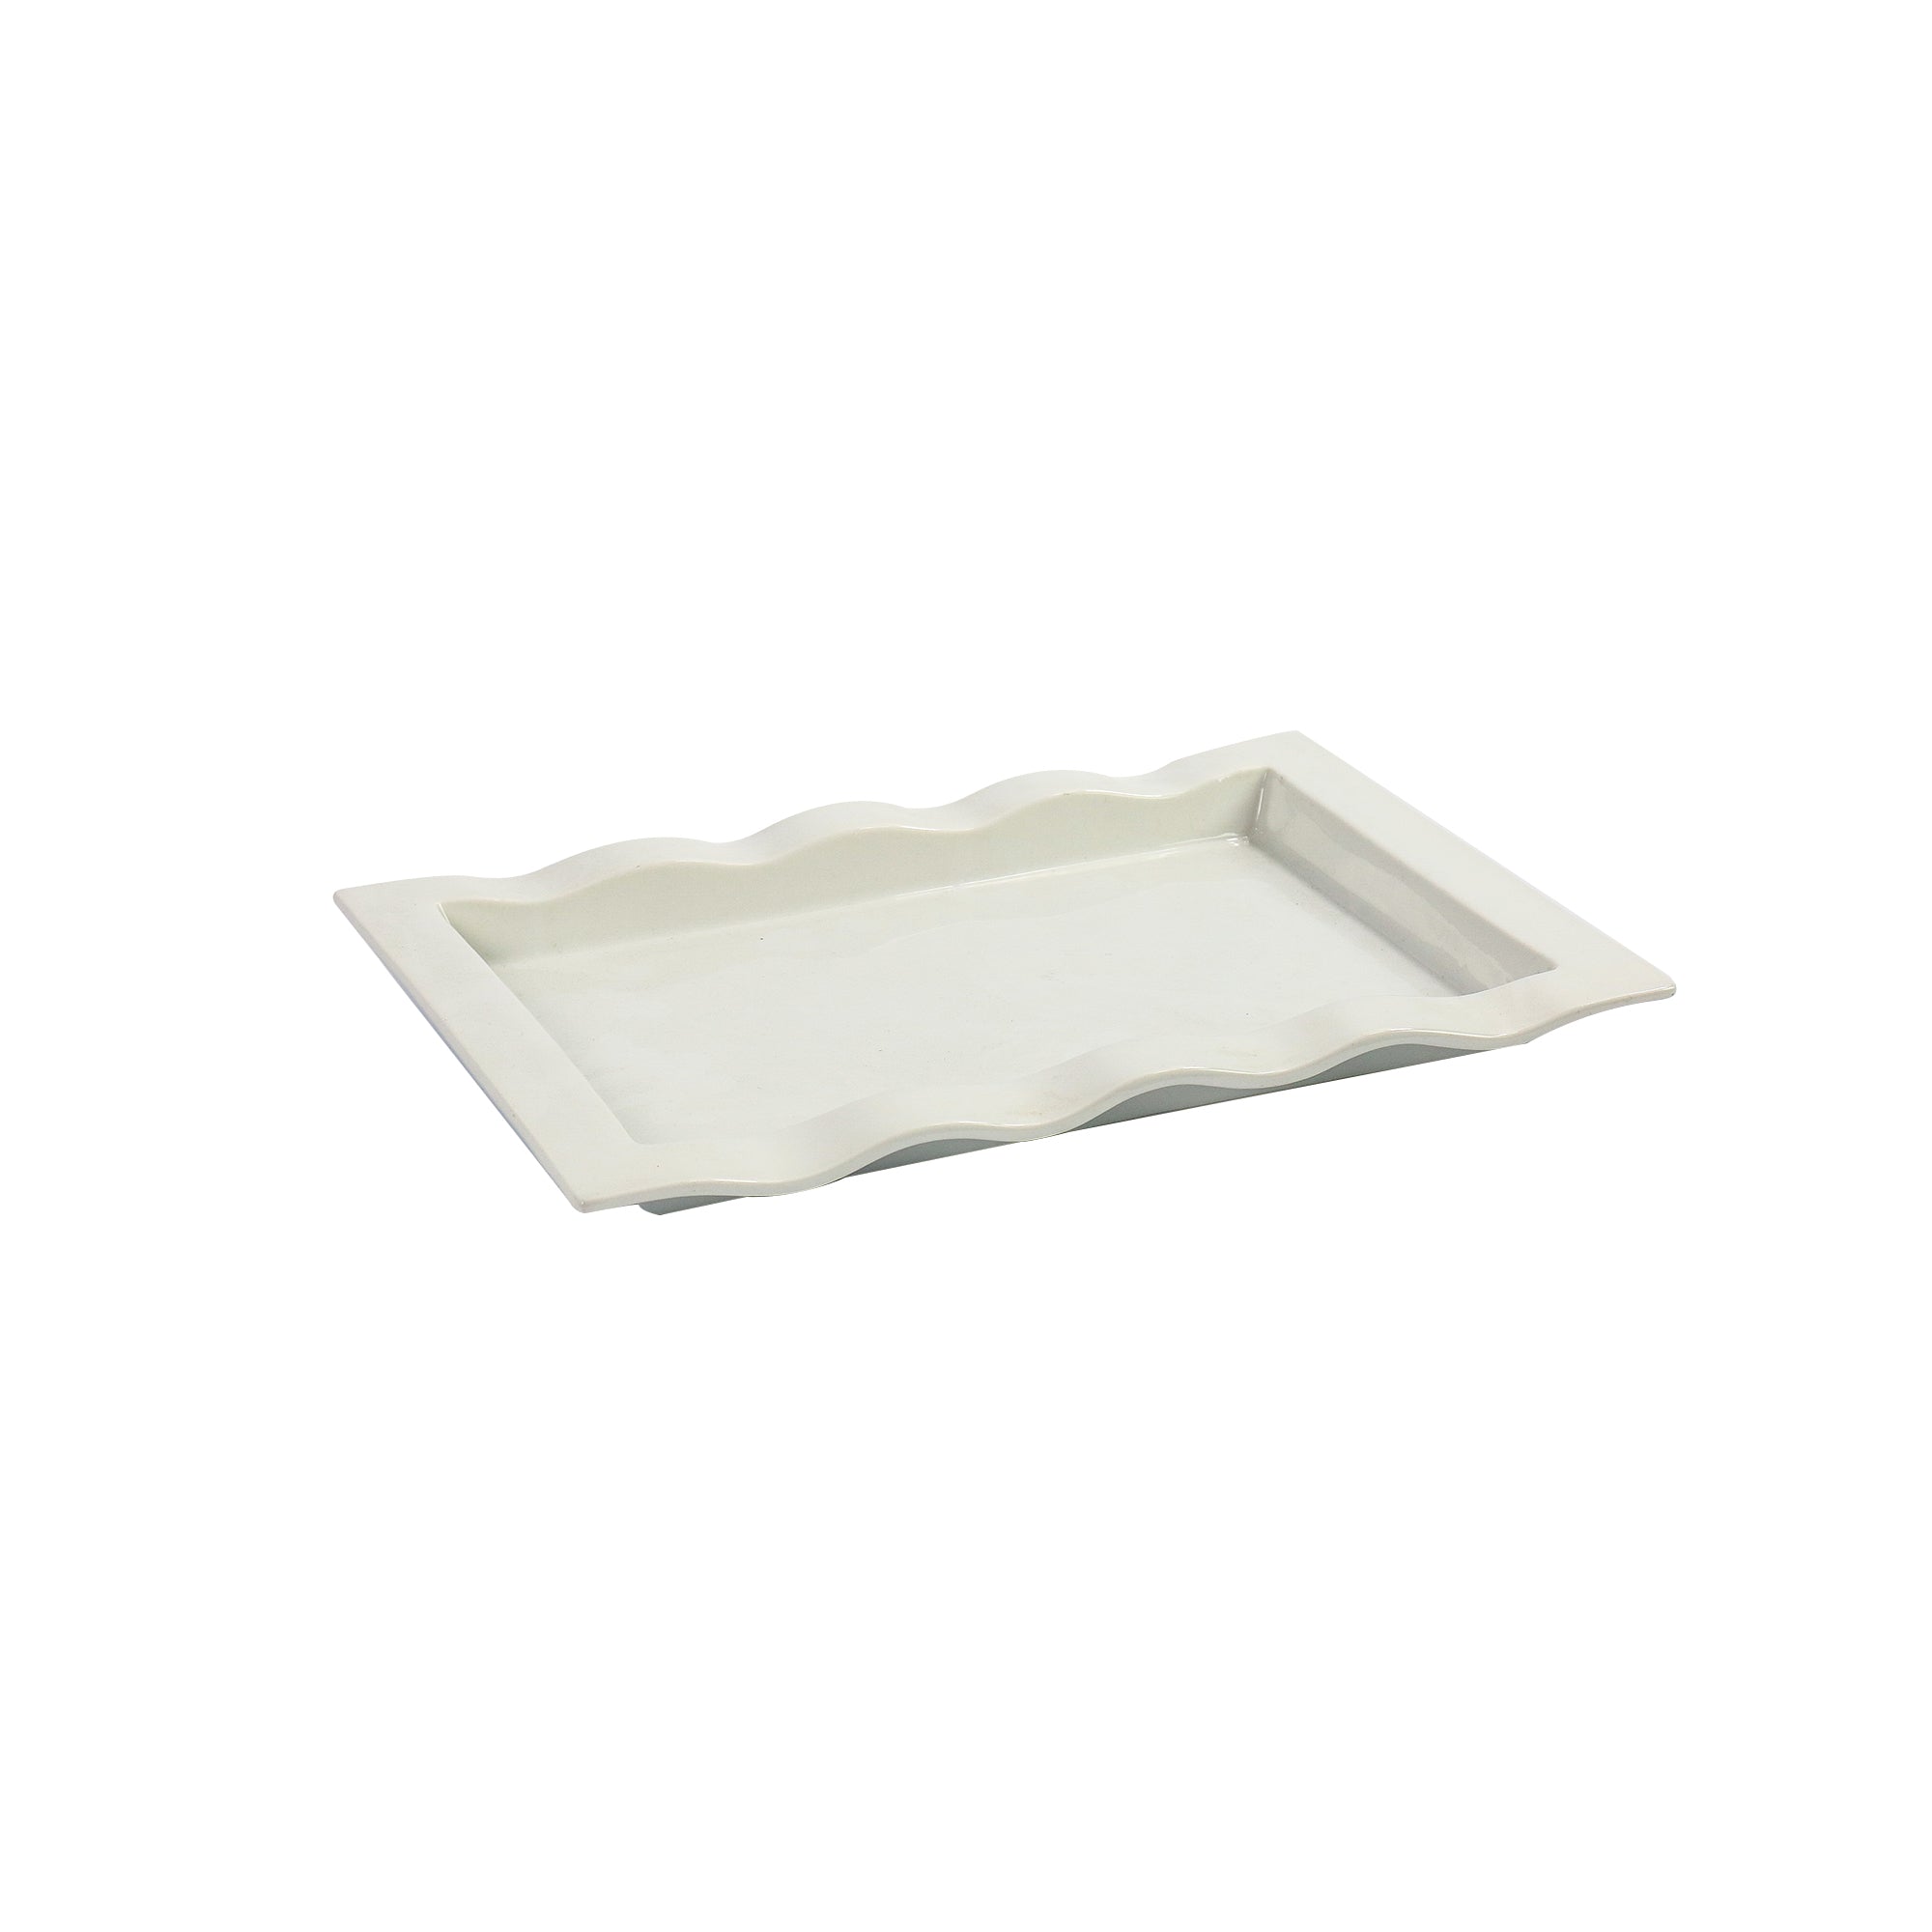 Ceramic Serving Square Platter 36x24.5x3cm 33139